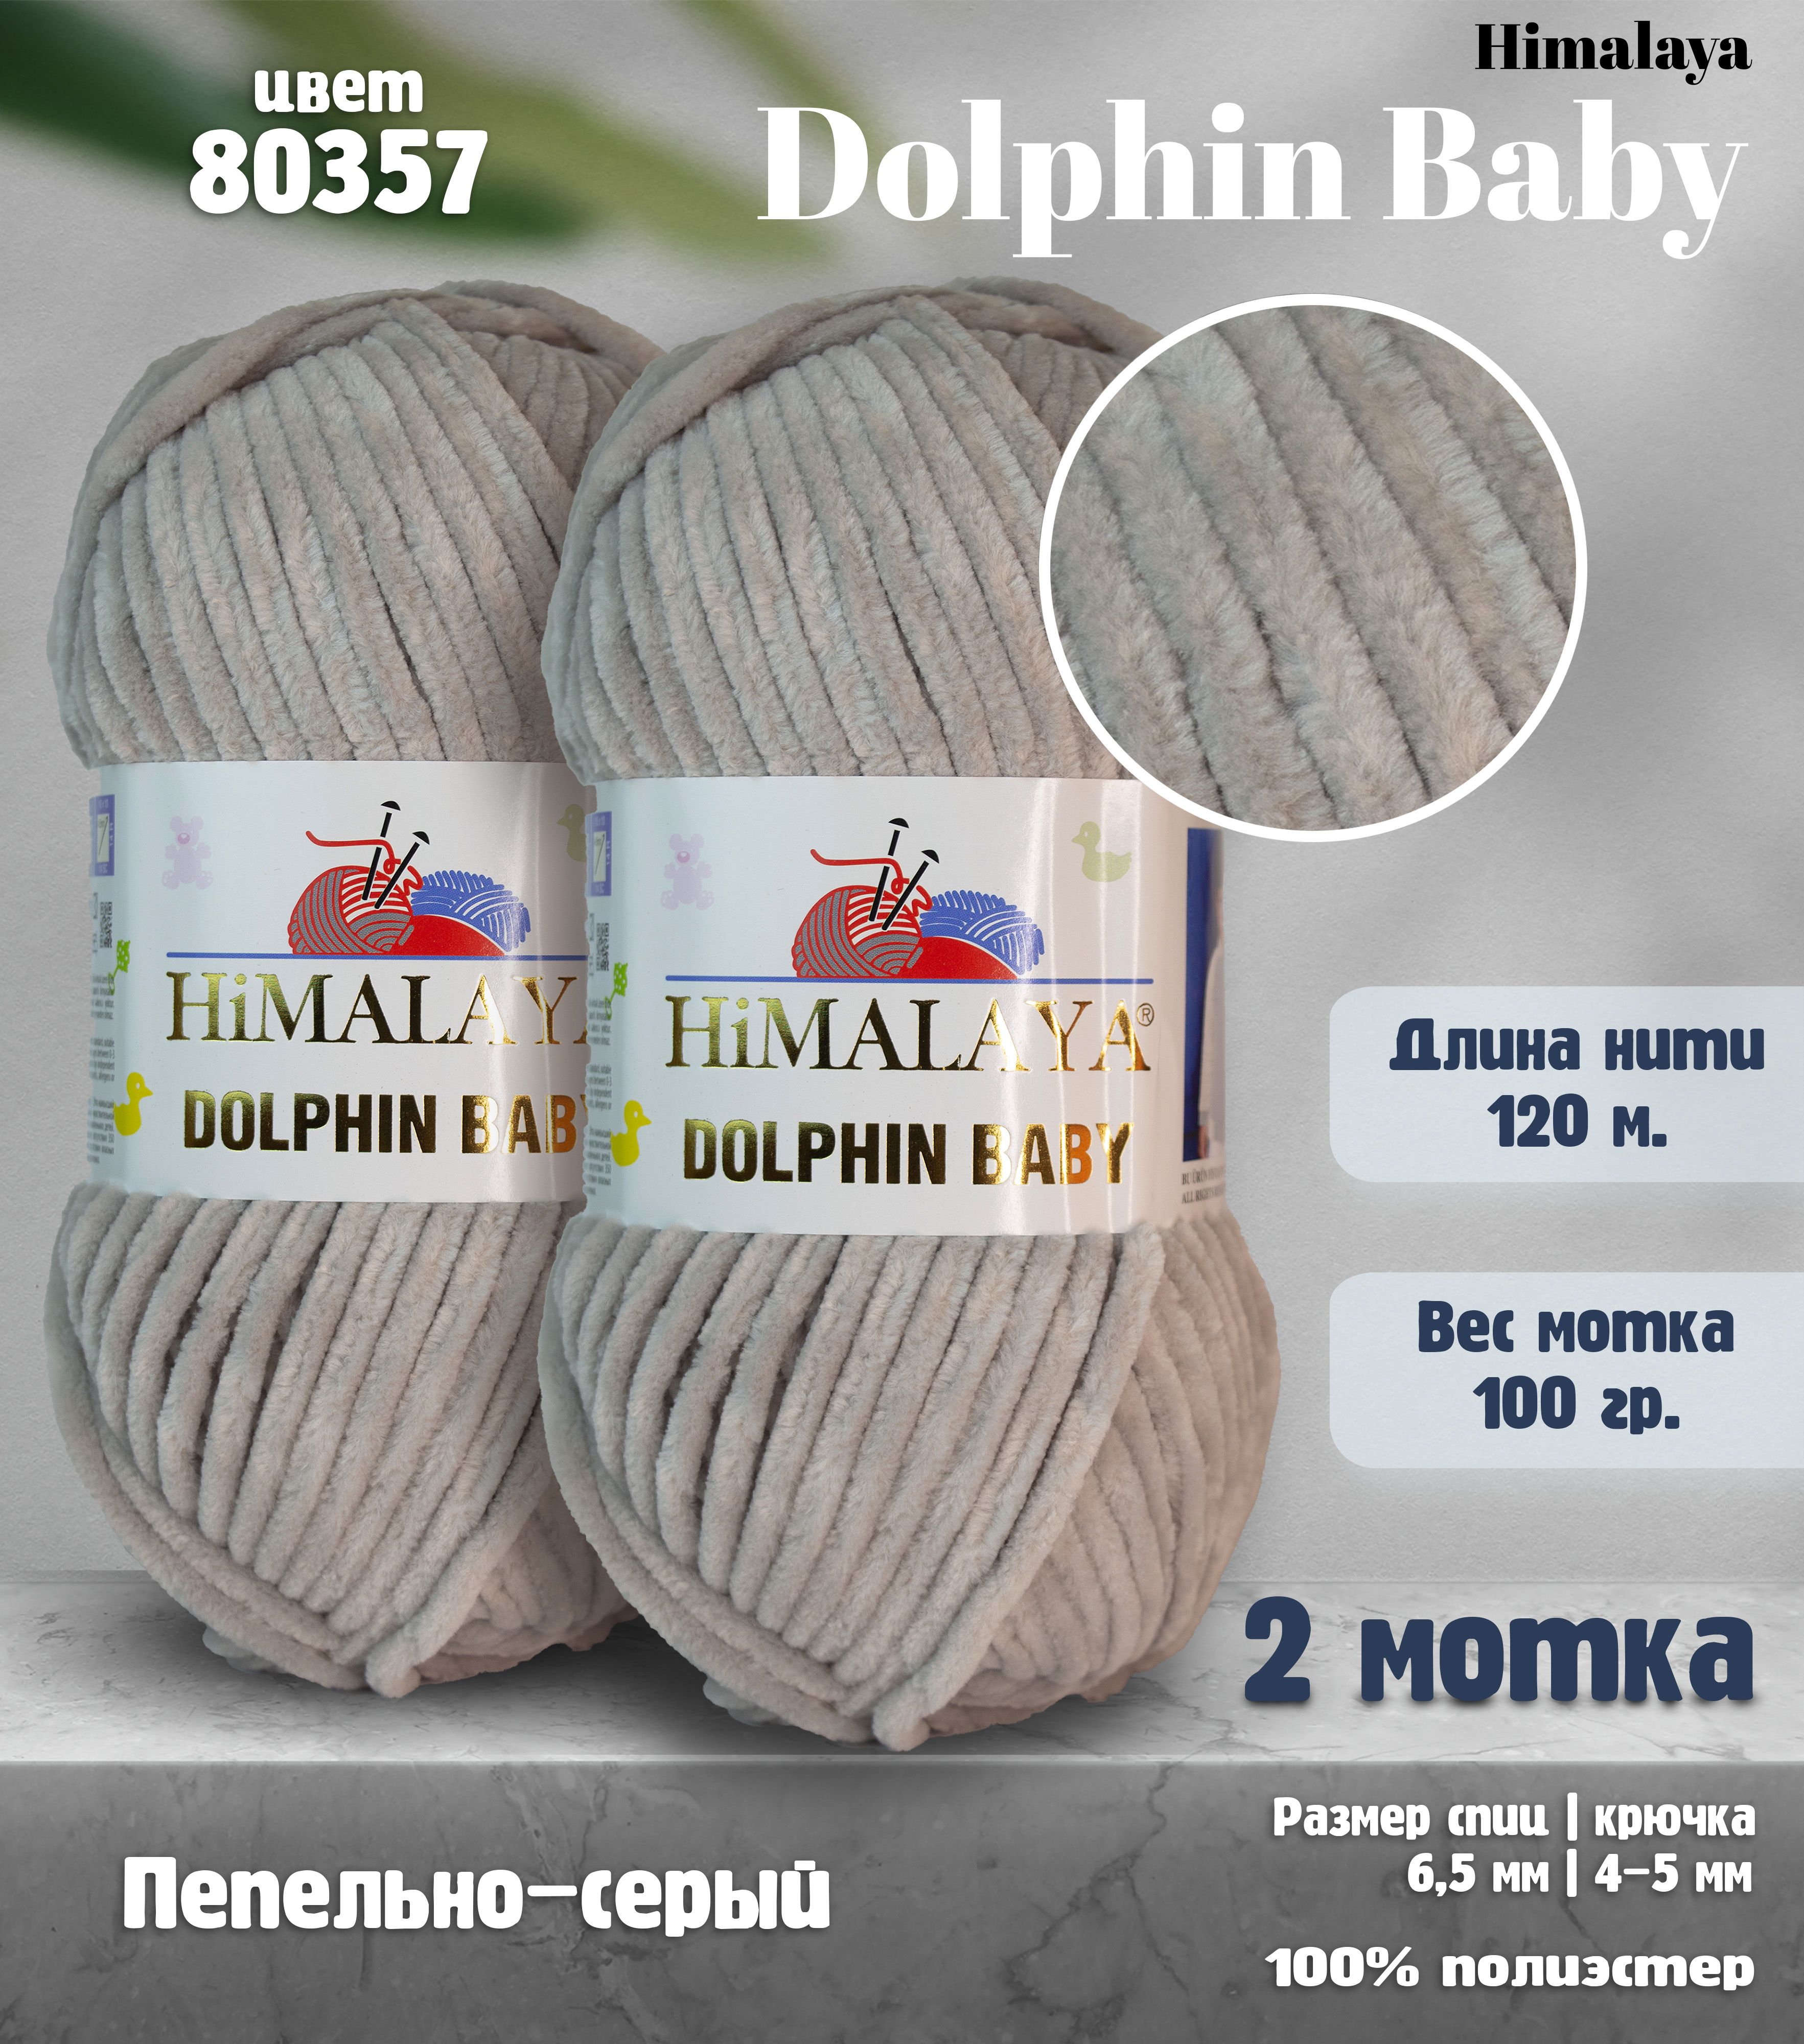 Пряжу Himalaya Dolphin Baby цвет 80357 пепельный – купить дешево